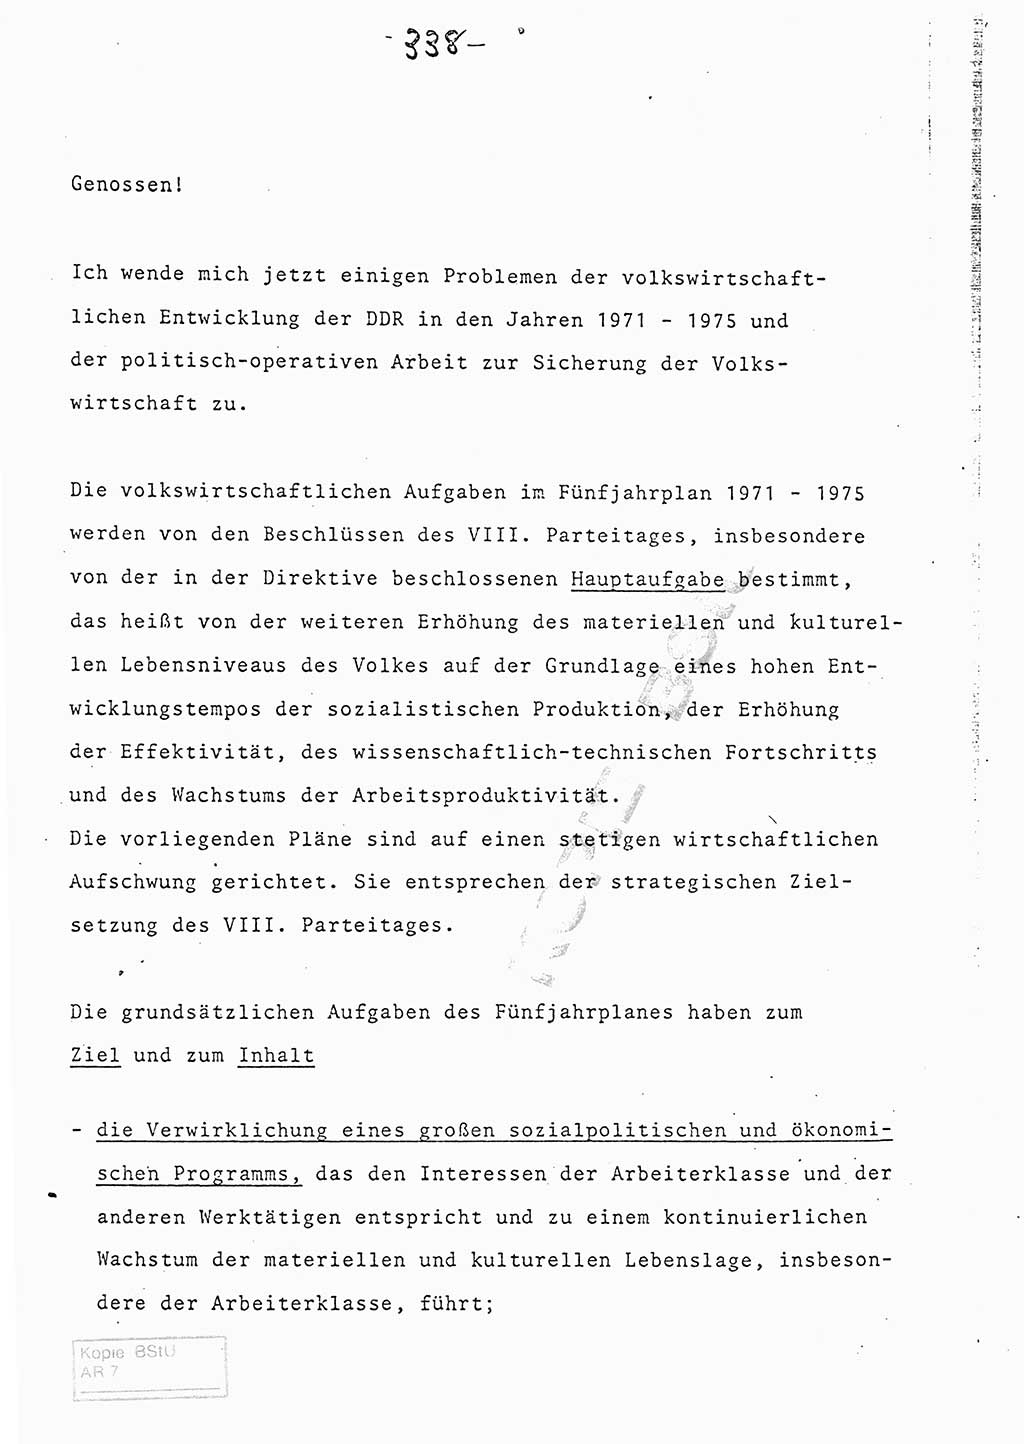 Referat (Entwurf) des Genossen Minister (Generaloberst Erich Mielke) auf der Dienstkonferenz 1972, Ministerium für Staatssicherheit (MfS) [Deutsche Demokratische Republik (DDR)], Der Minister, Geheime Verschlußsache (GVS) 008-150/72, Berlin 25.2.1972, Seite 338 (Ref. Entw. DK MfS DDR Min. GVS 008-150/72 1972, S. 338)